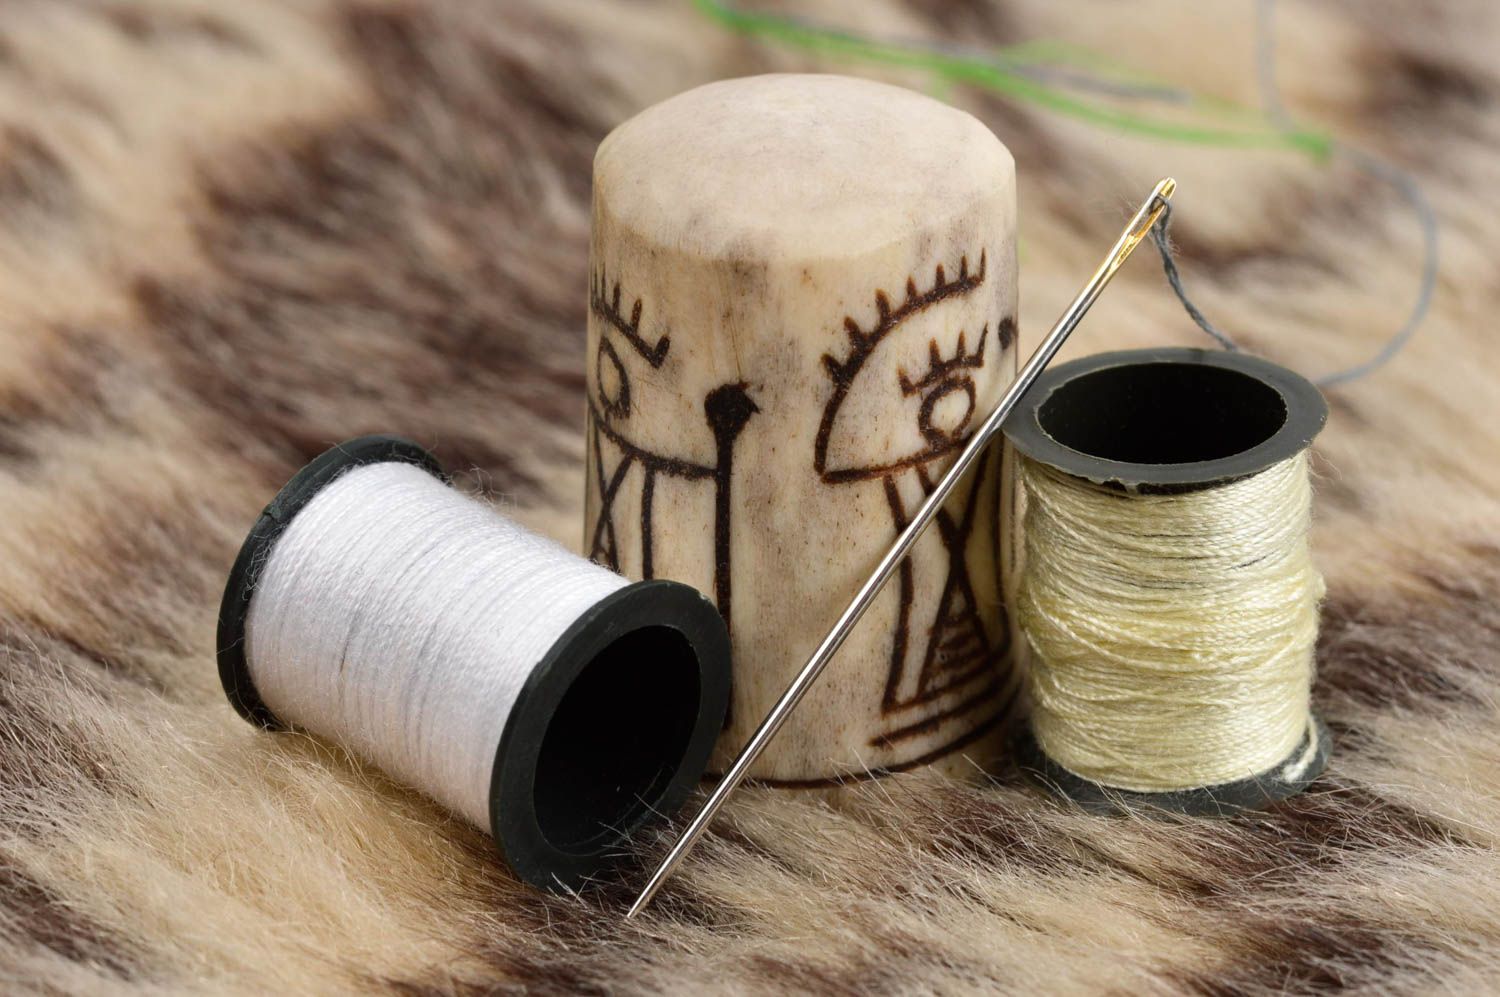 Наперсток для шитья: как выбрать и когда использовать